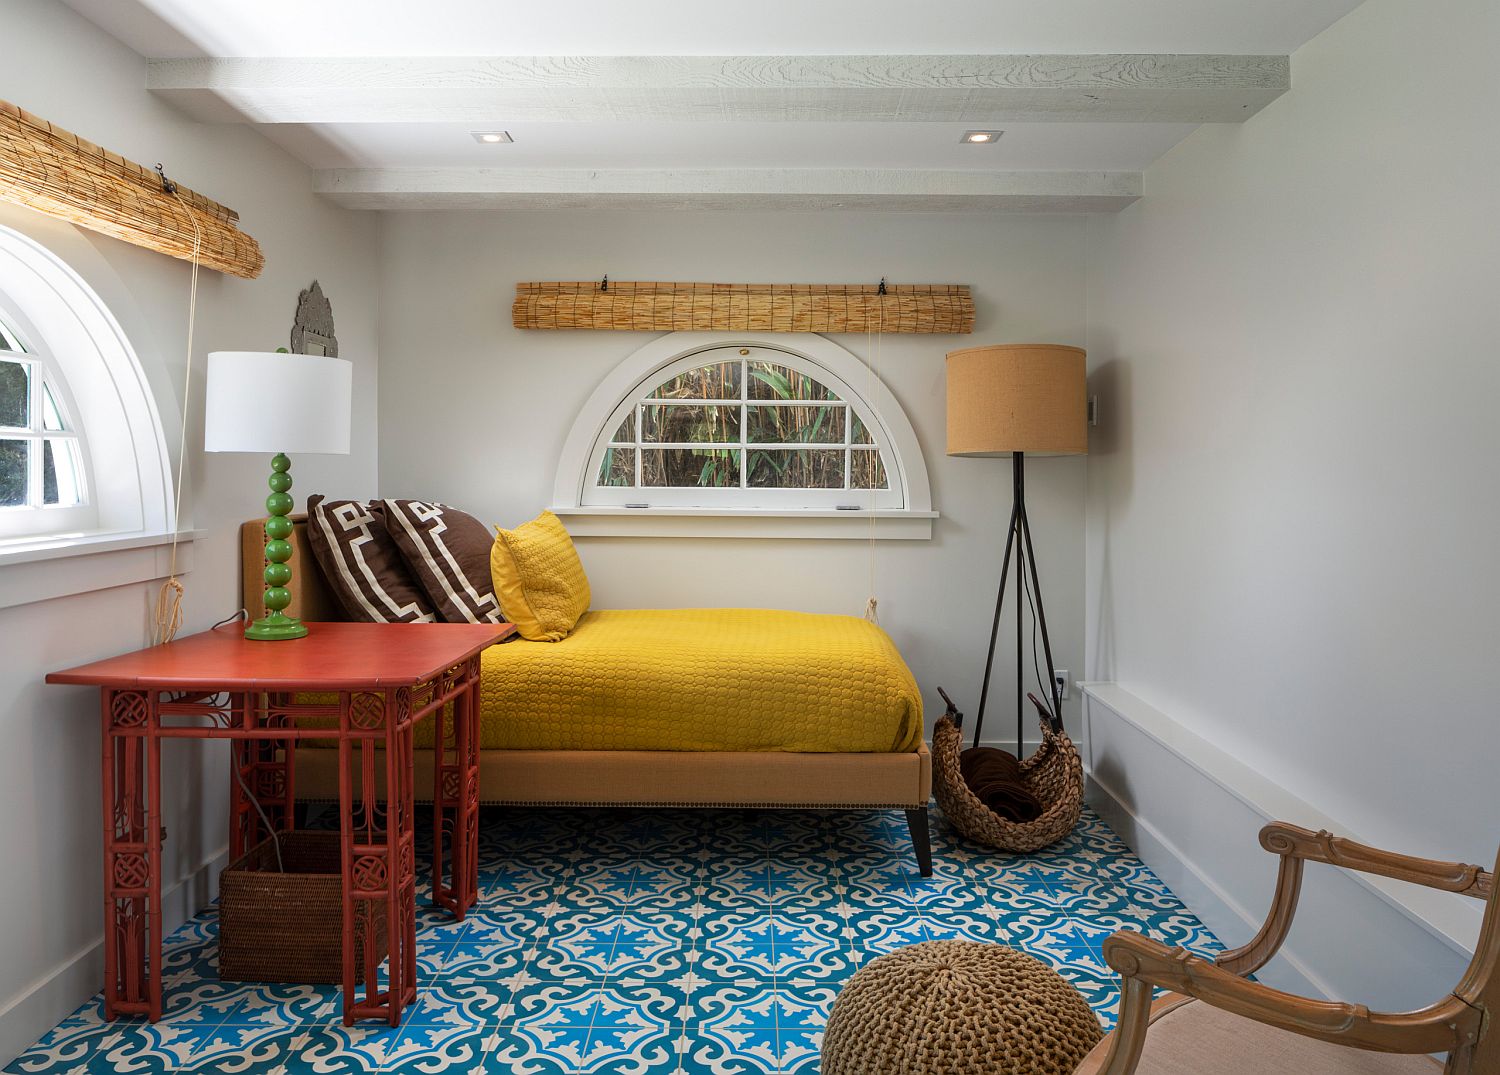 Hình ảnh phòng ngủ nhỏ phong cách Bắc Âu với tường và trần sơn trắng, ga gối màu vàng chanh, bàn đỏ bên cạnh, rèm cửa bằng tre che cửa sổ kính bán nguyệt, sàn lát gạch bông xanh dương.